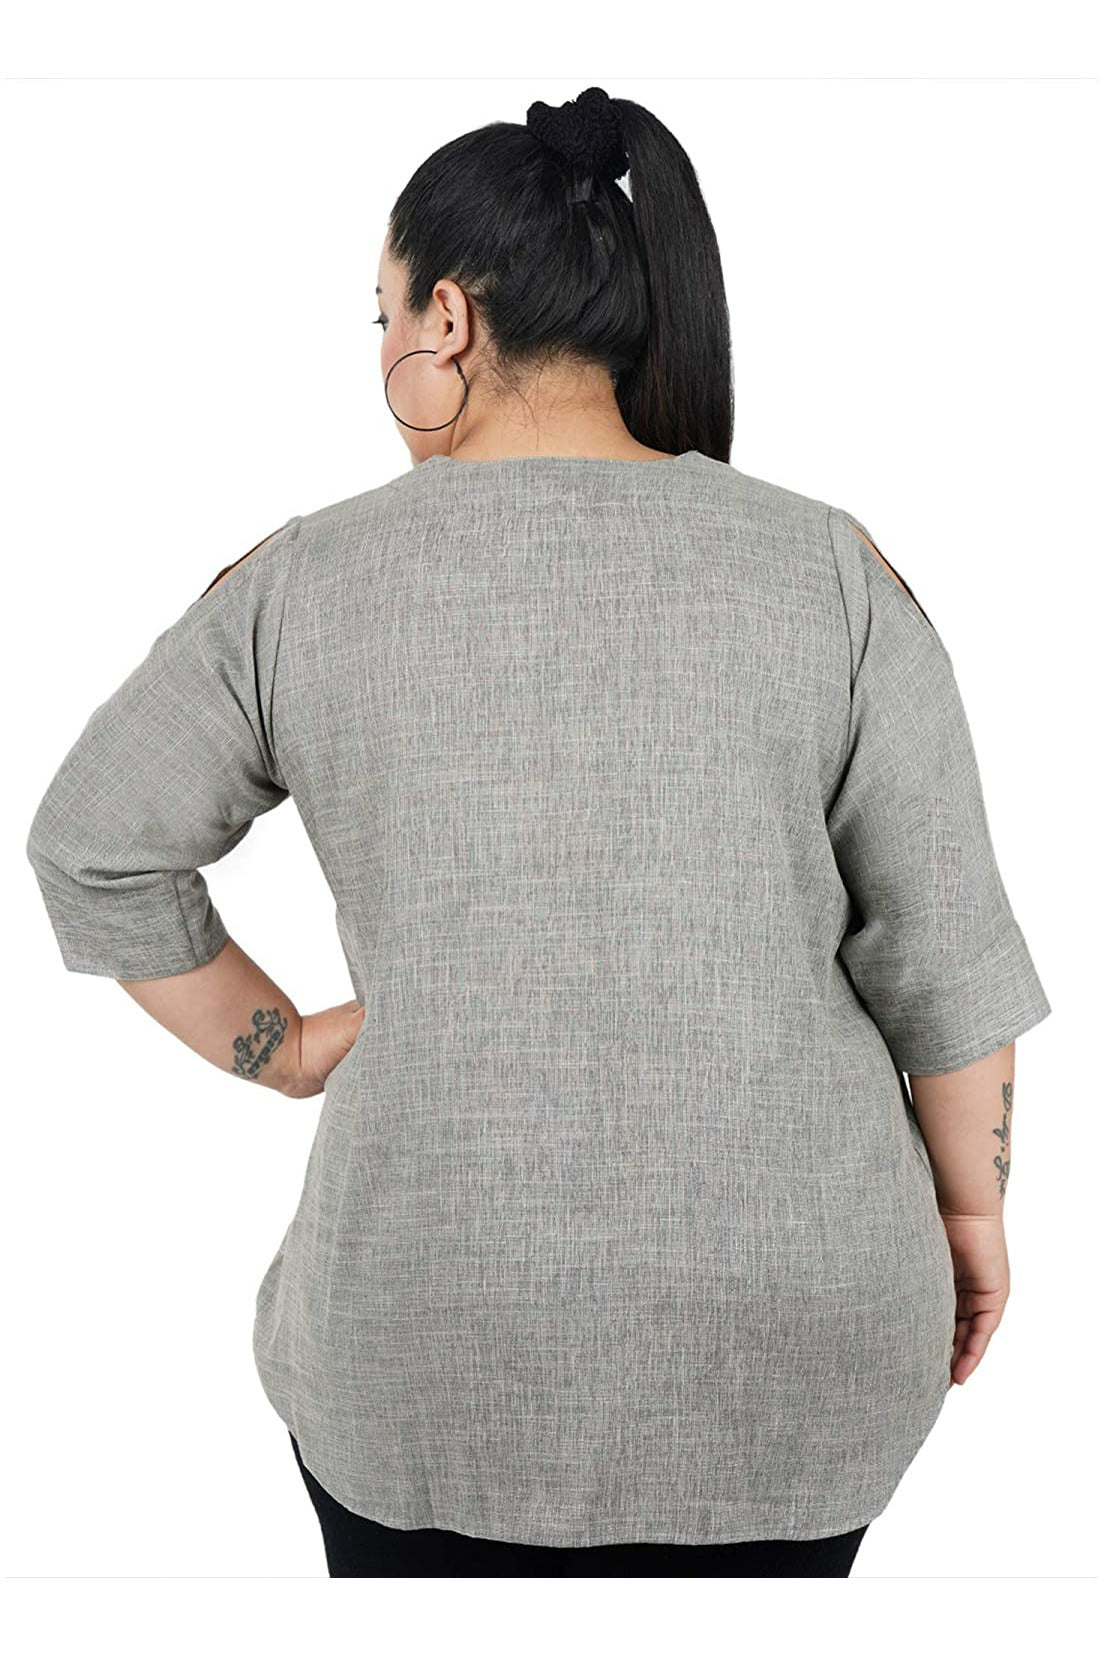 Women's Plus Sizes Rayon Cotton Tunic Shirt – Amy's Cart Queen